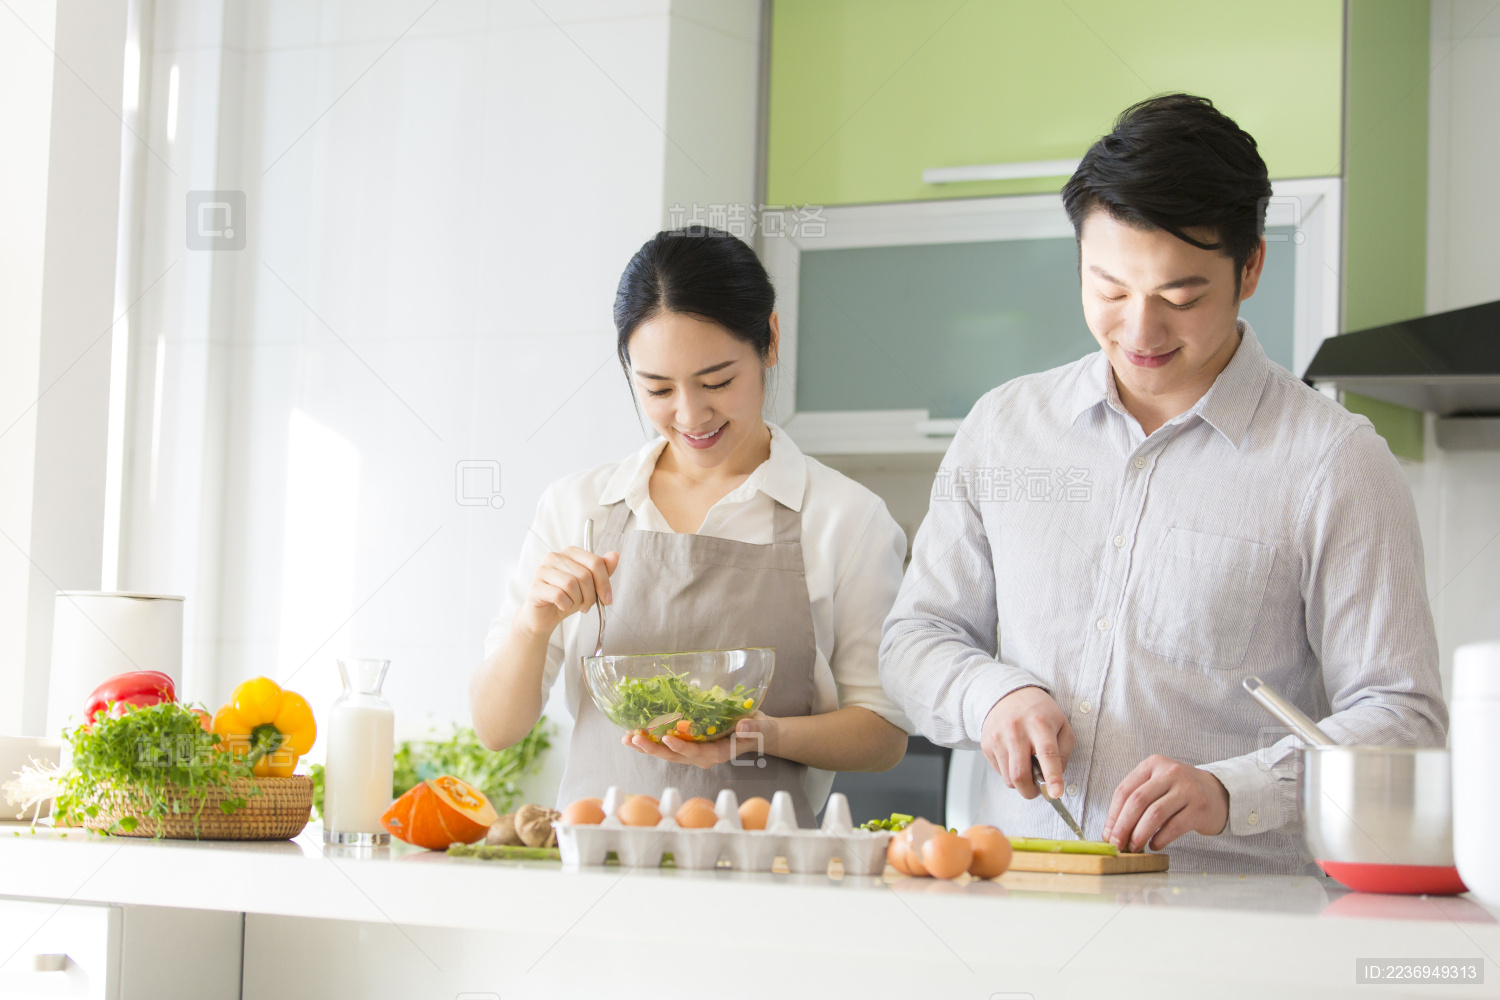 年轻情侣在厨房做饭-蓝牛仔影像-中国原创广告影像素材